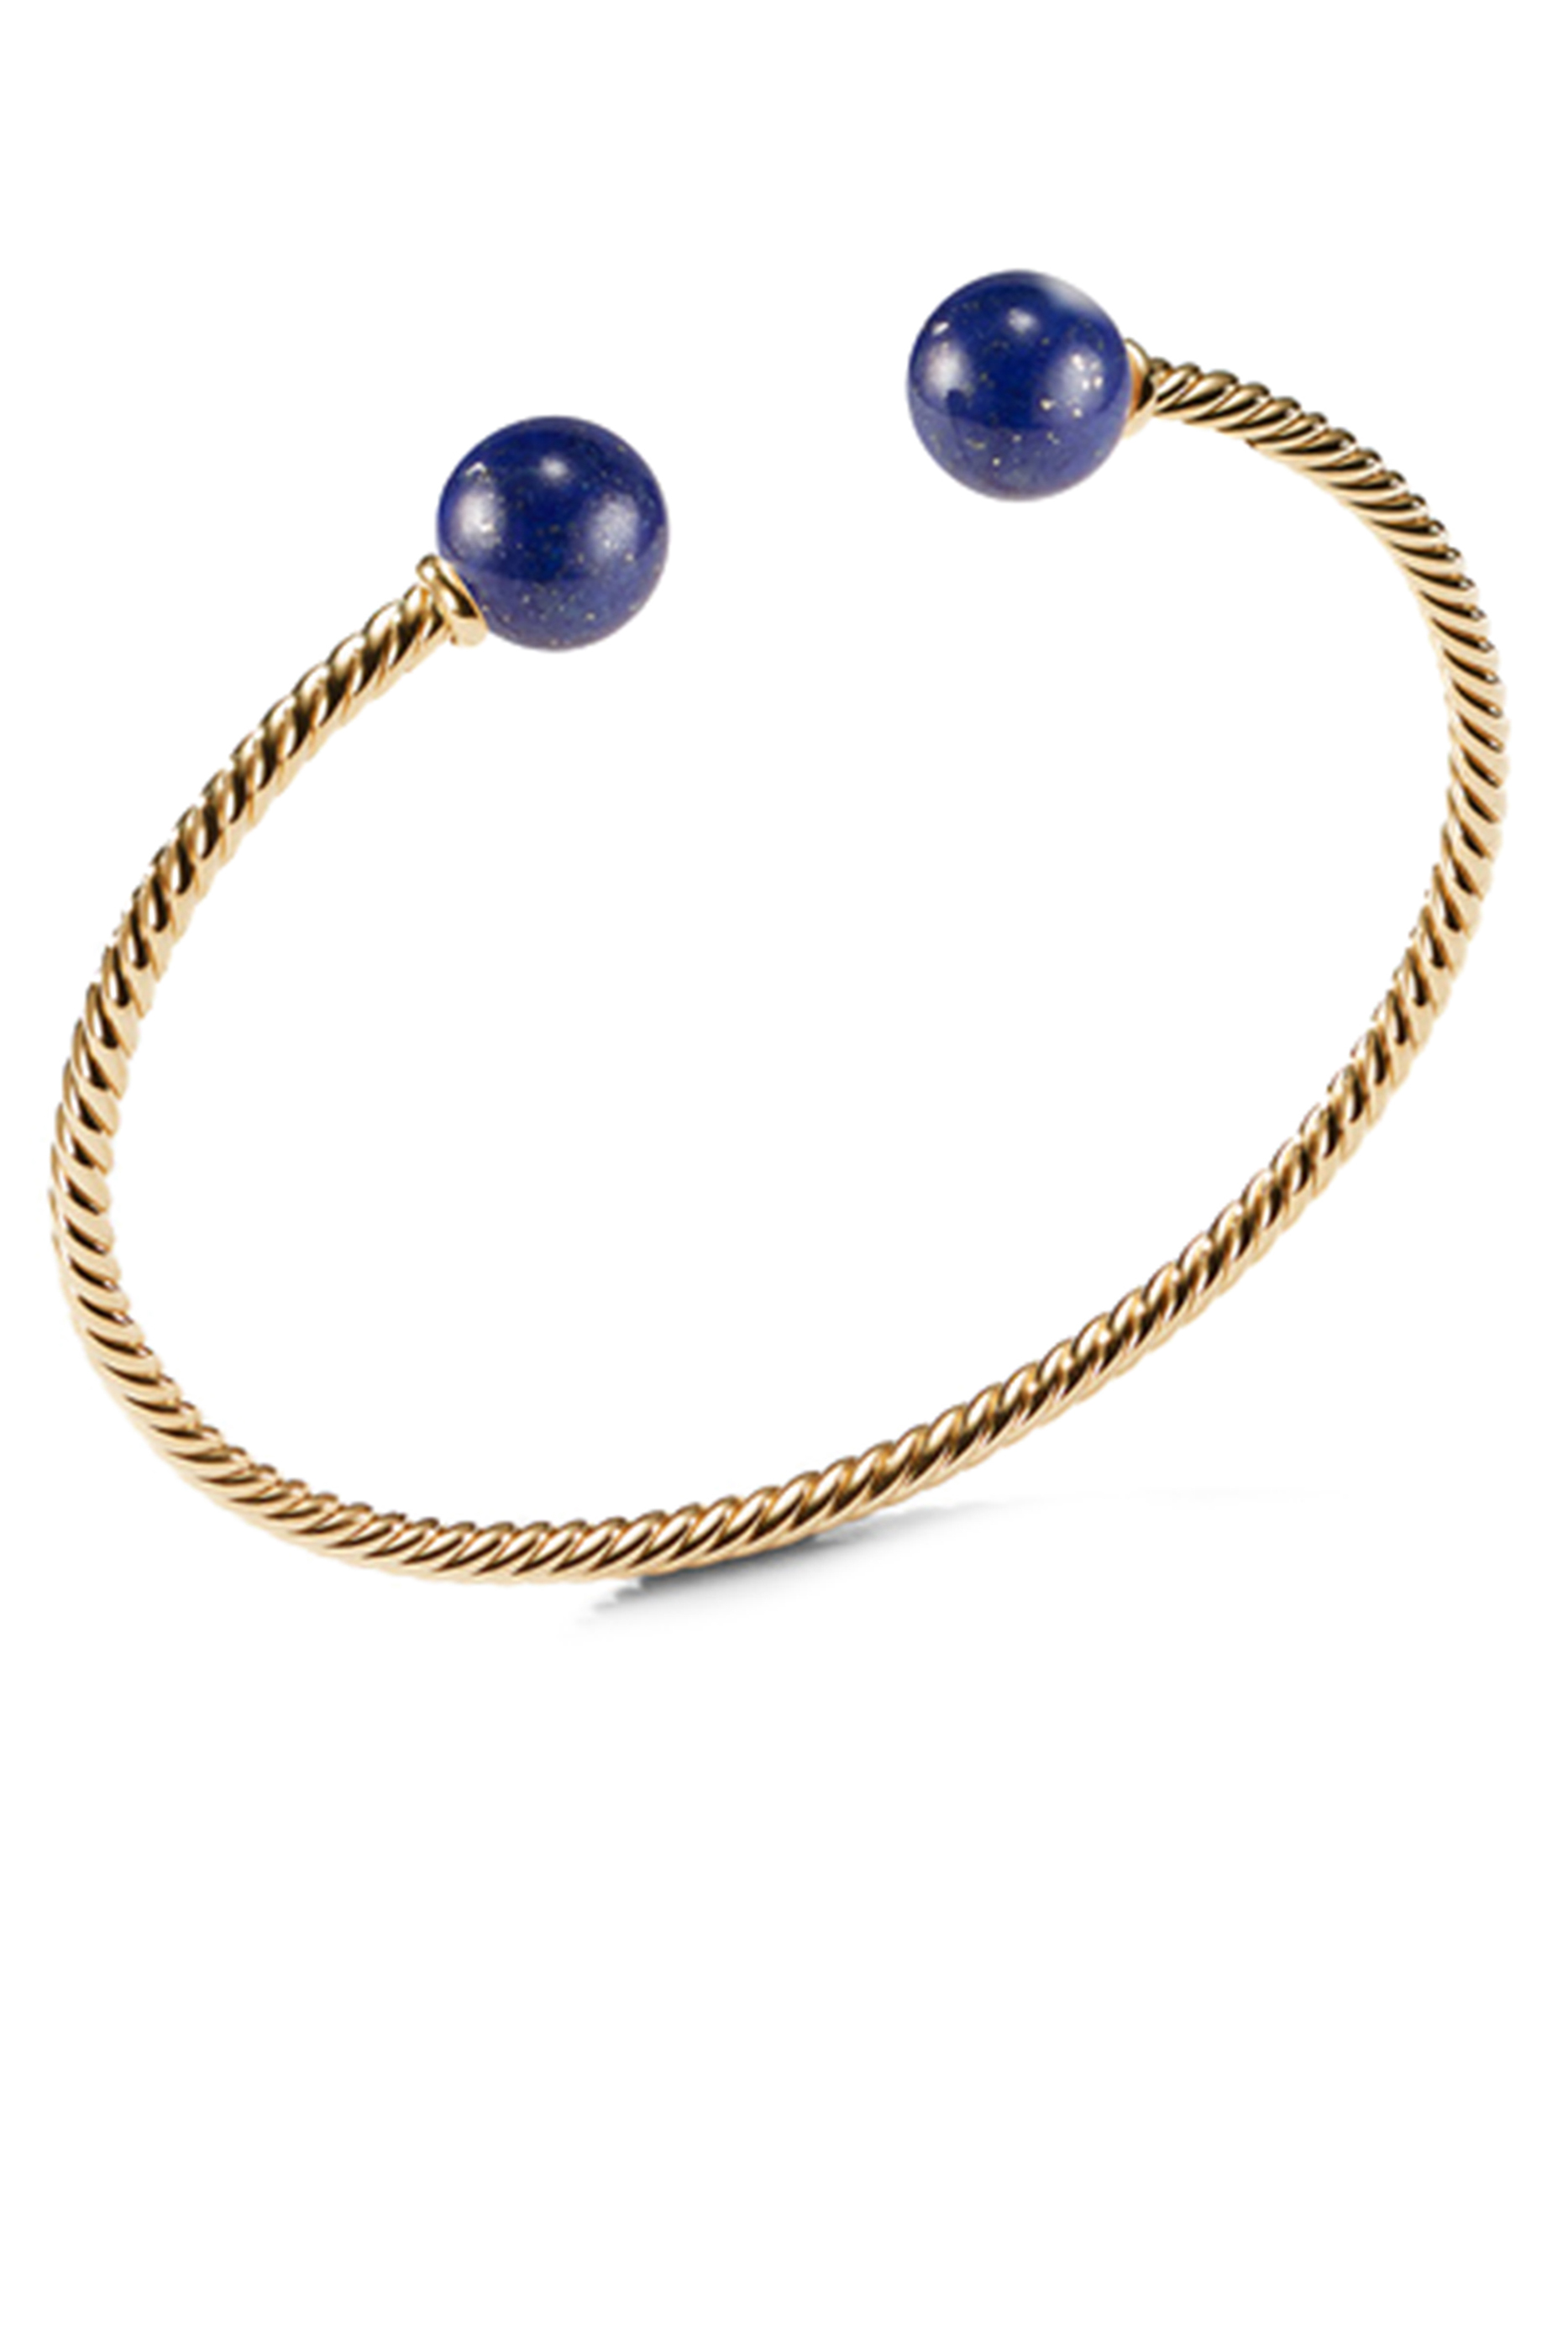 Buy David Yurman Solari Lapis Lazuli Bracelet for Womens | Bloomingdale ...